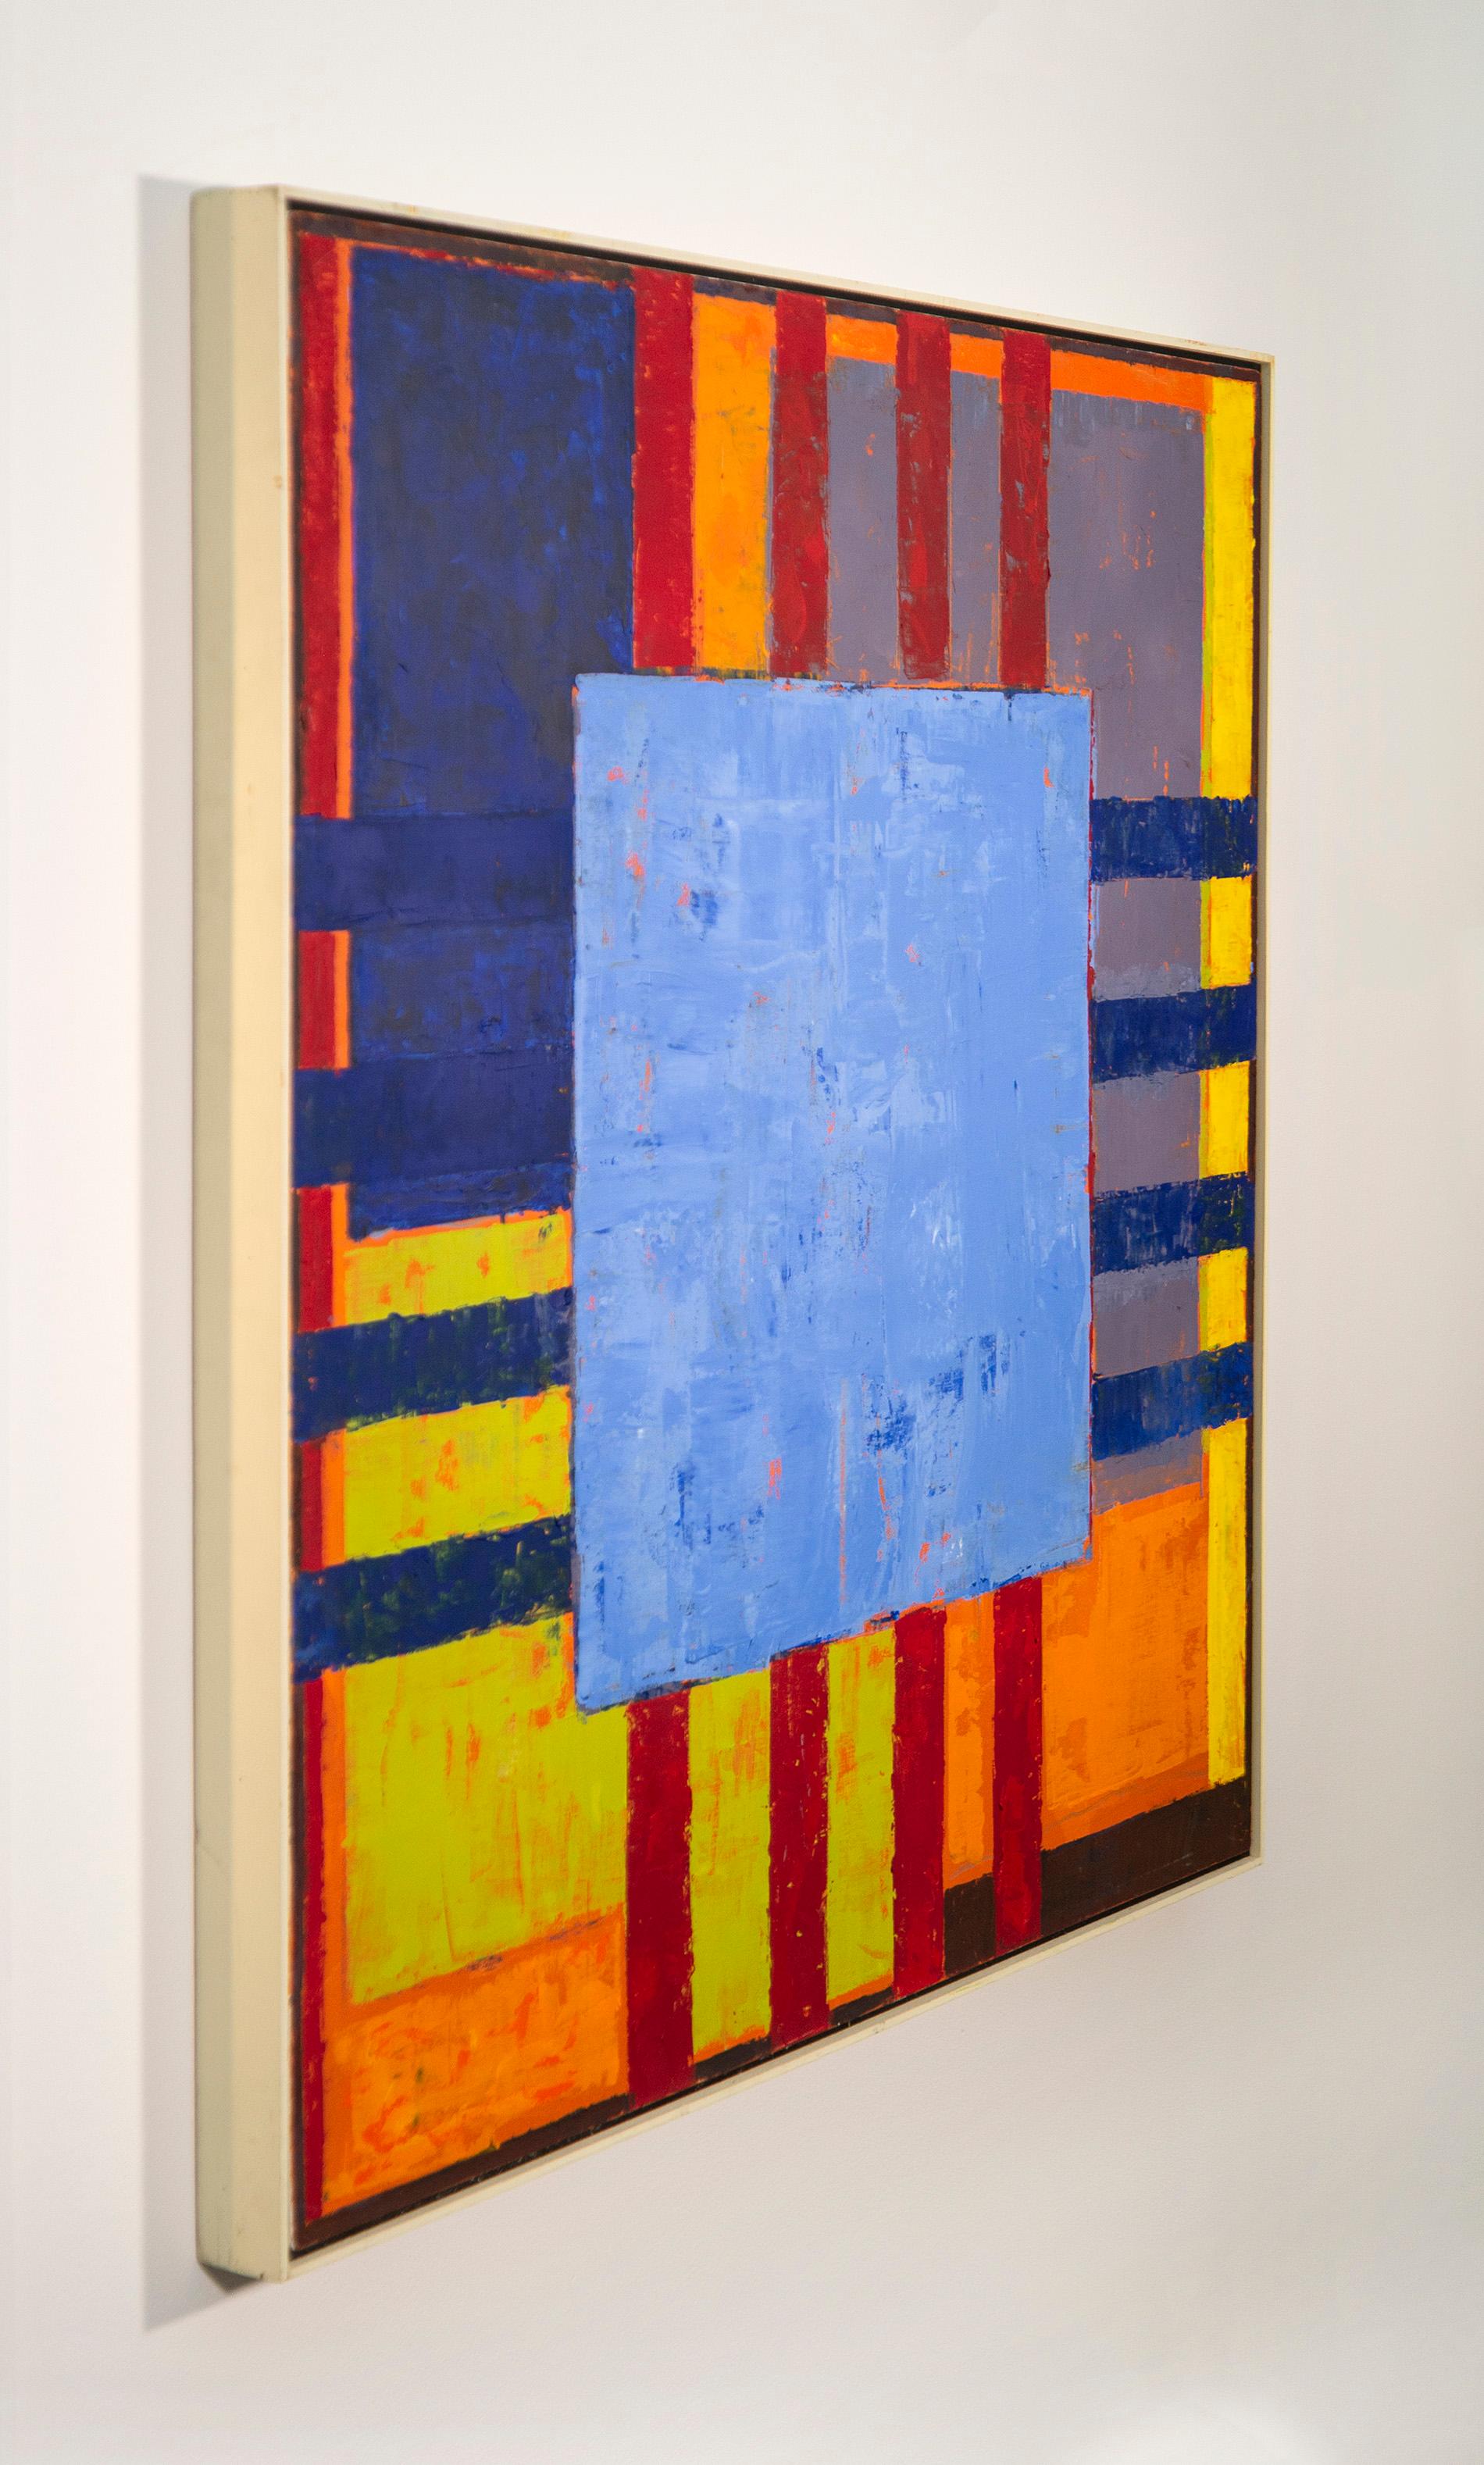 Havana No 5, Blau - kühn, hell, farbenfroh, abstrakt, modernistisch, Öl auf Leinwand (Zeitgenössisch), Painting, von David Sorensen